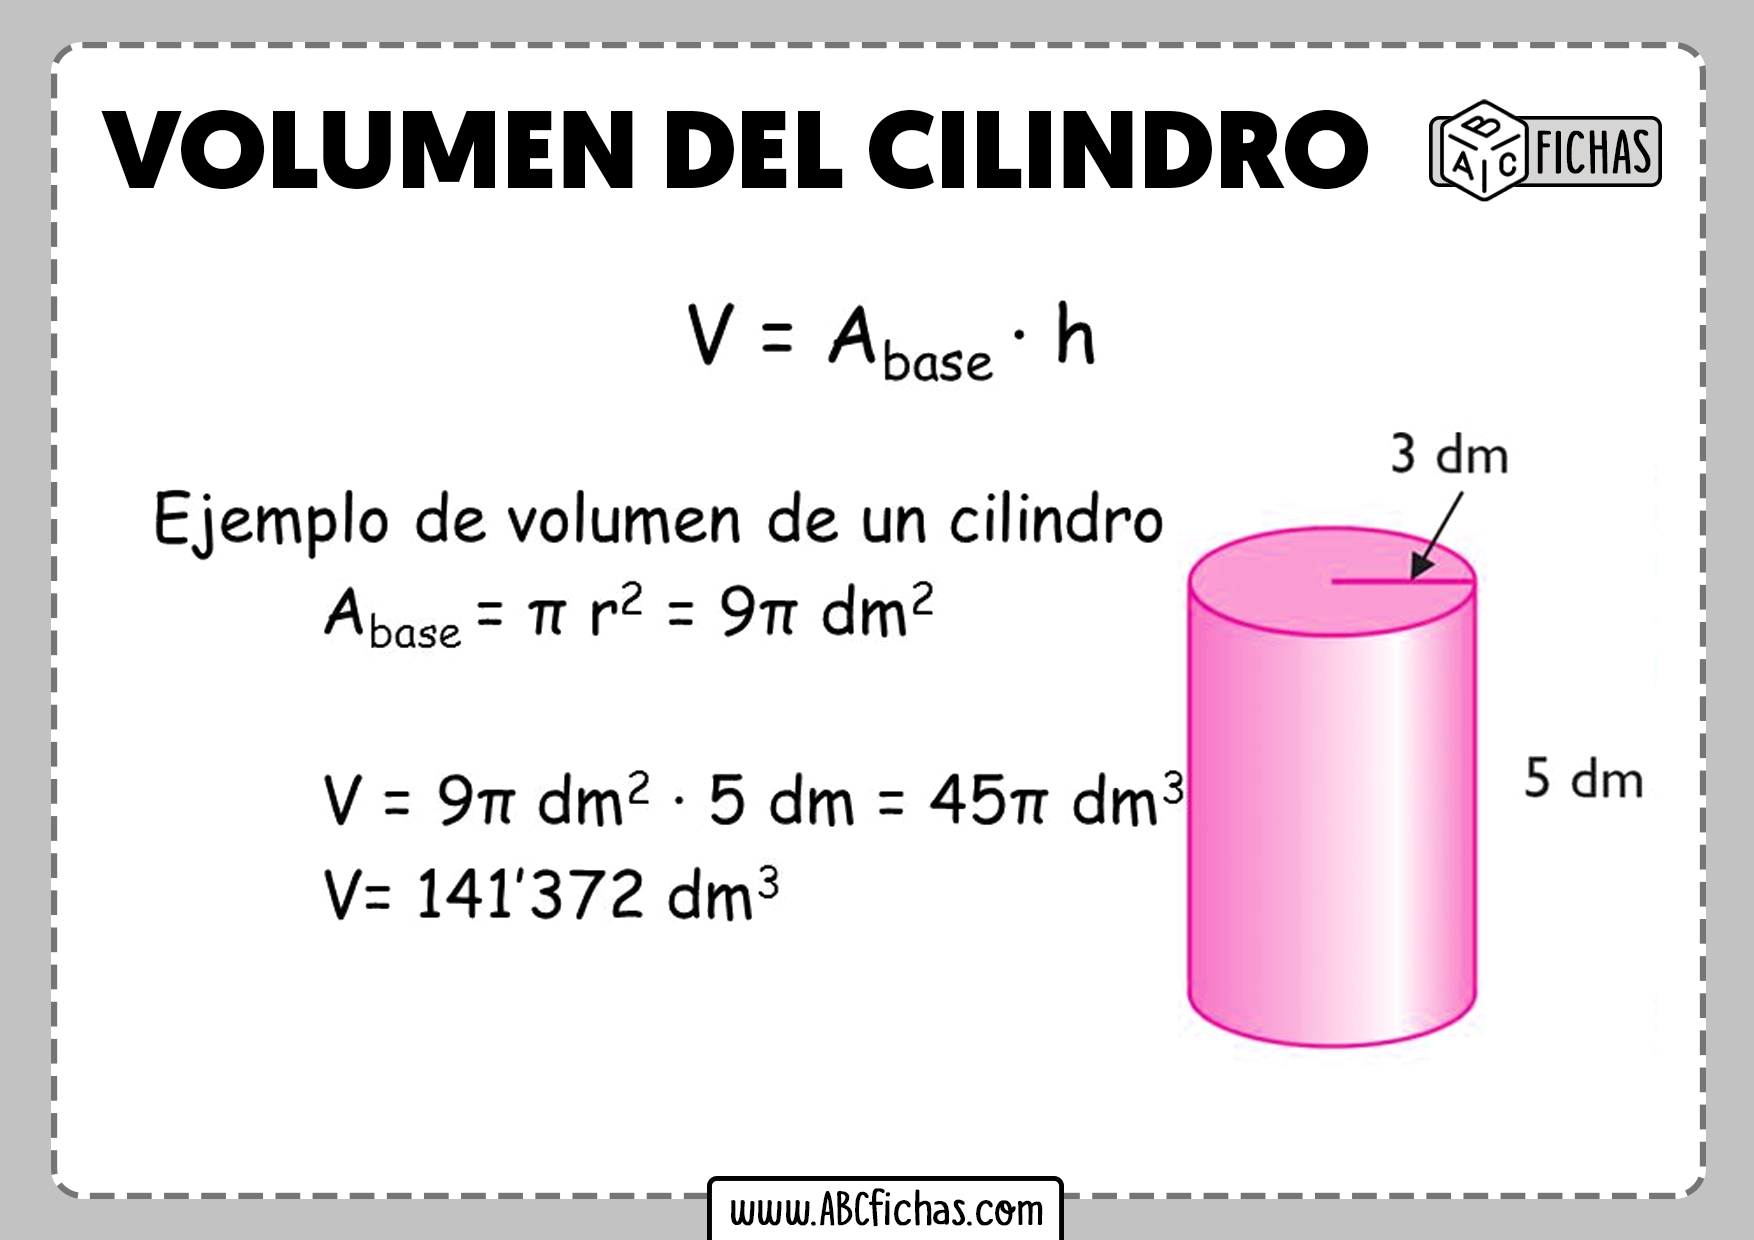 Como se calcula el volumen del cilindro